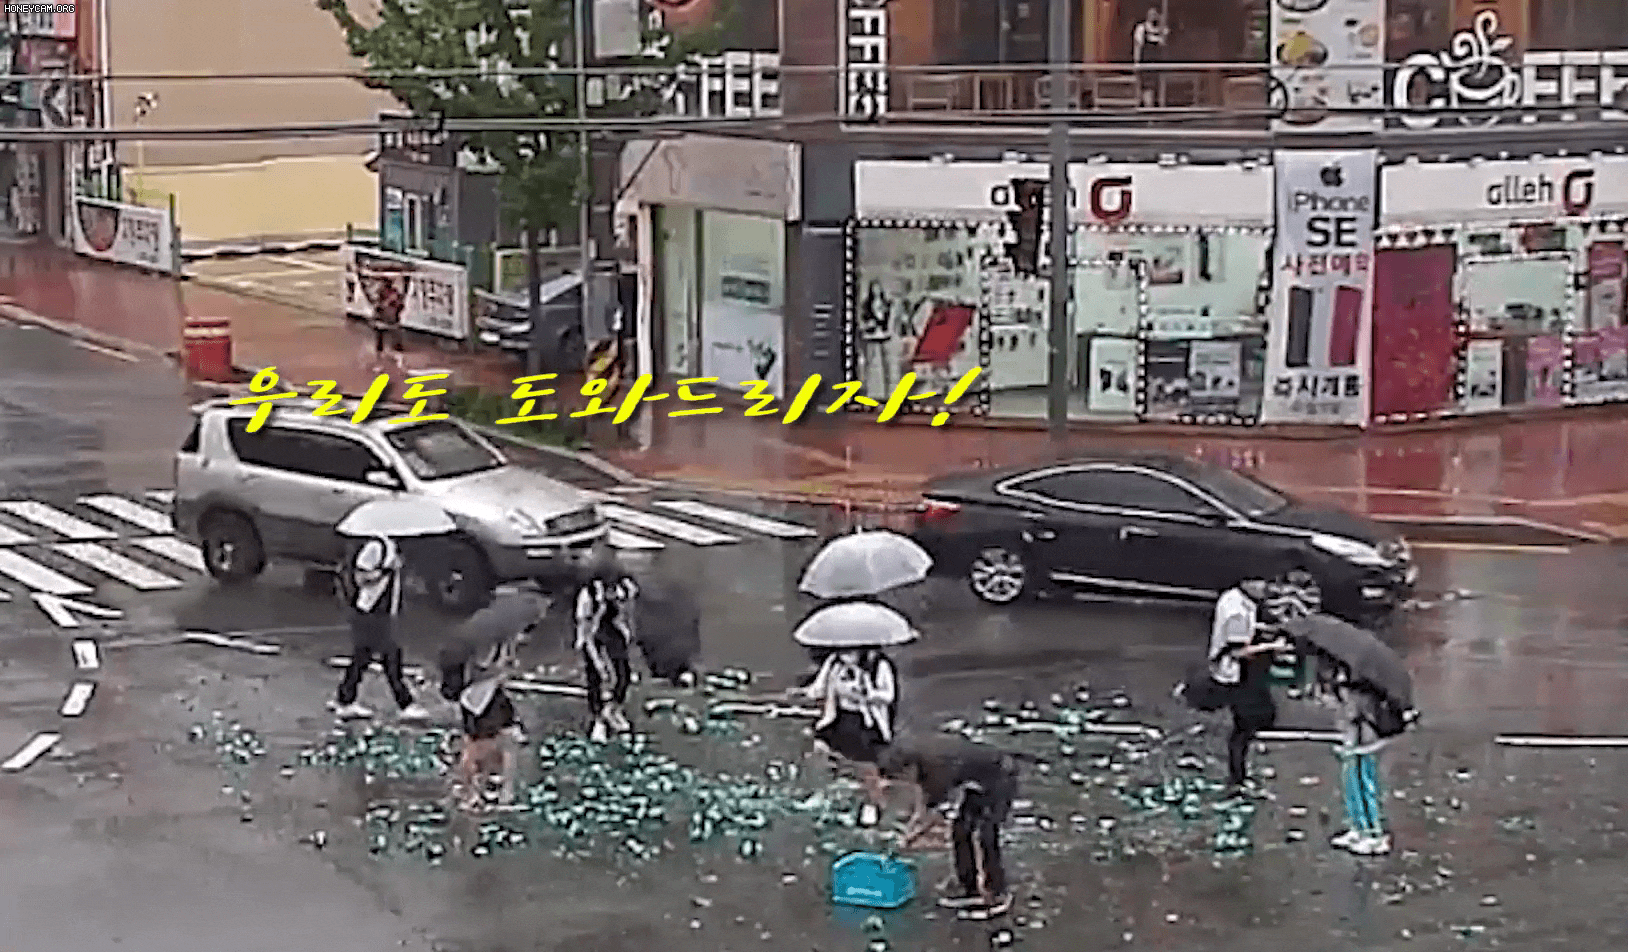 지난 7월 23일 오후 경북 포항 북구 젊음의 거리에서 학생들이 도로 위에 떨어진 유리 파편과 상자를 청소하고 있다/경북지방경찰청